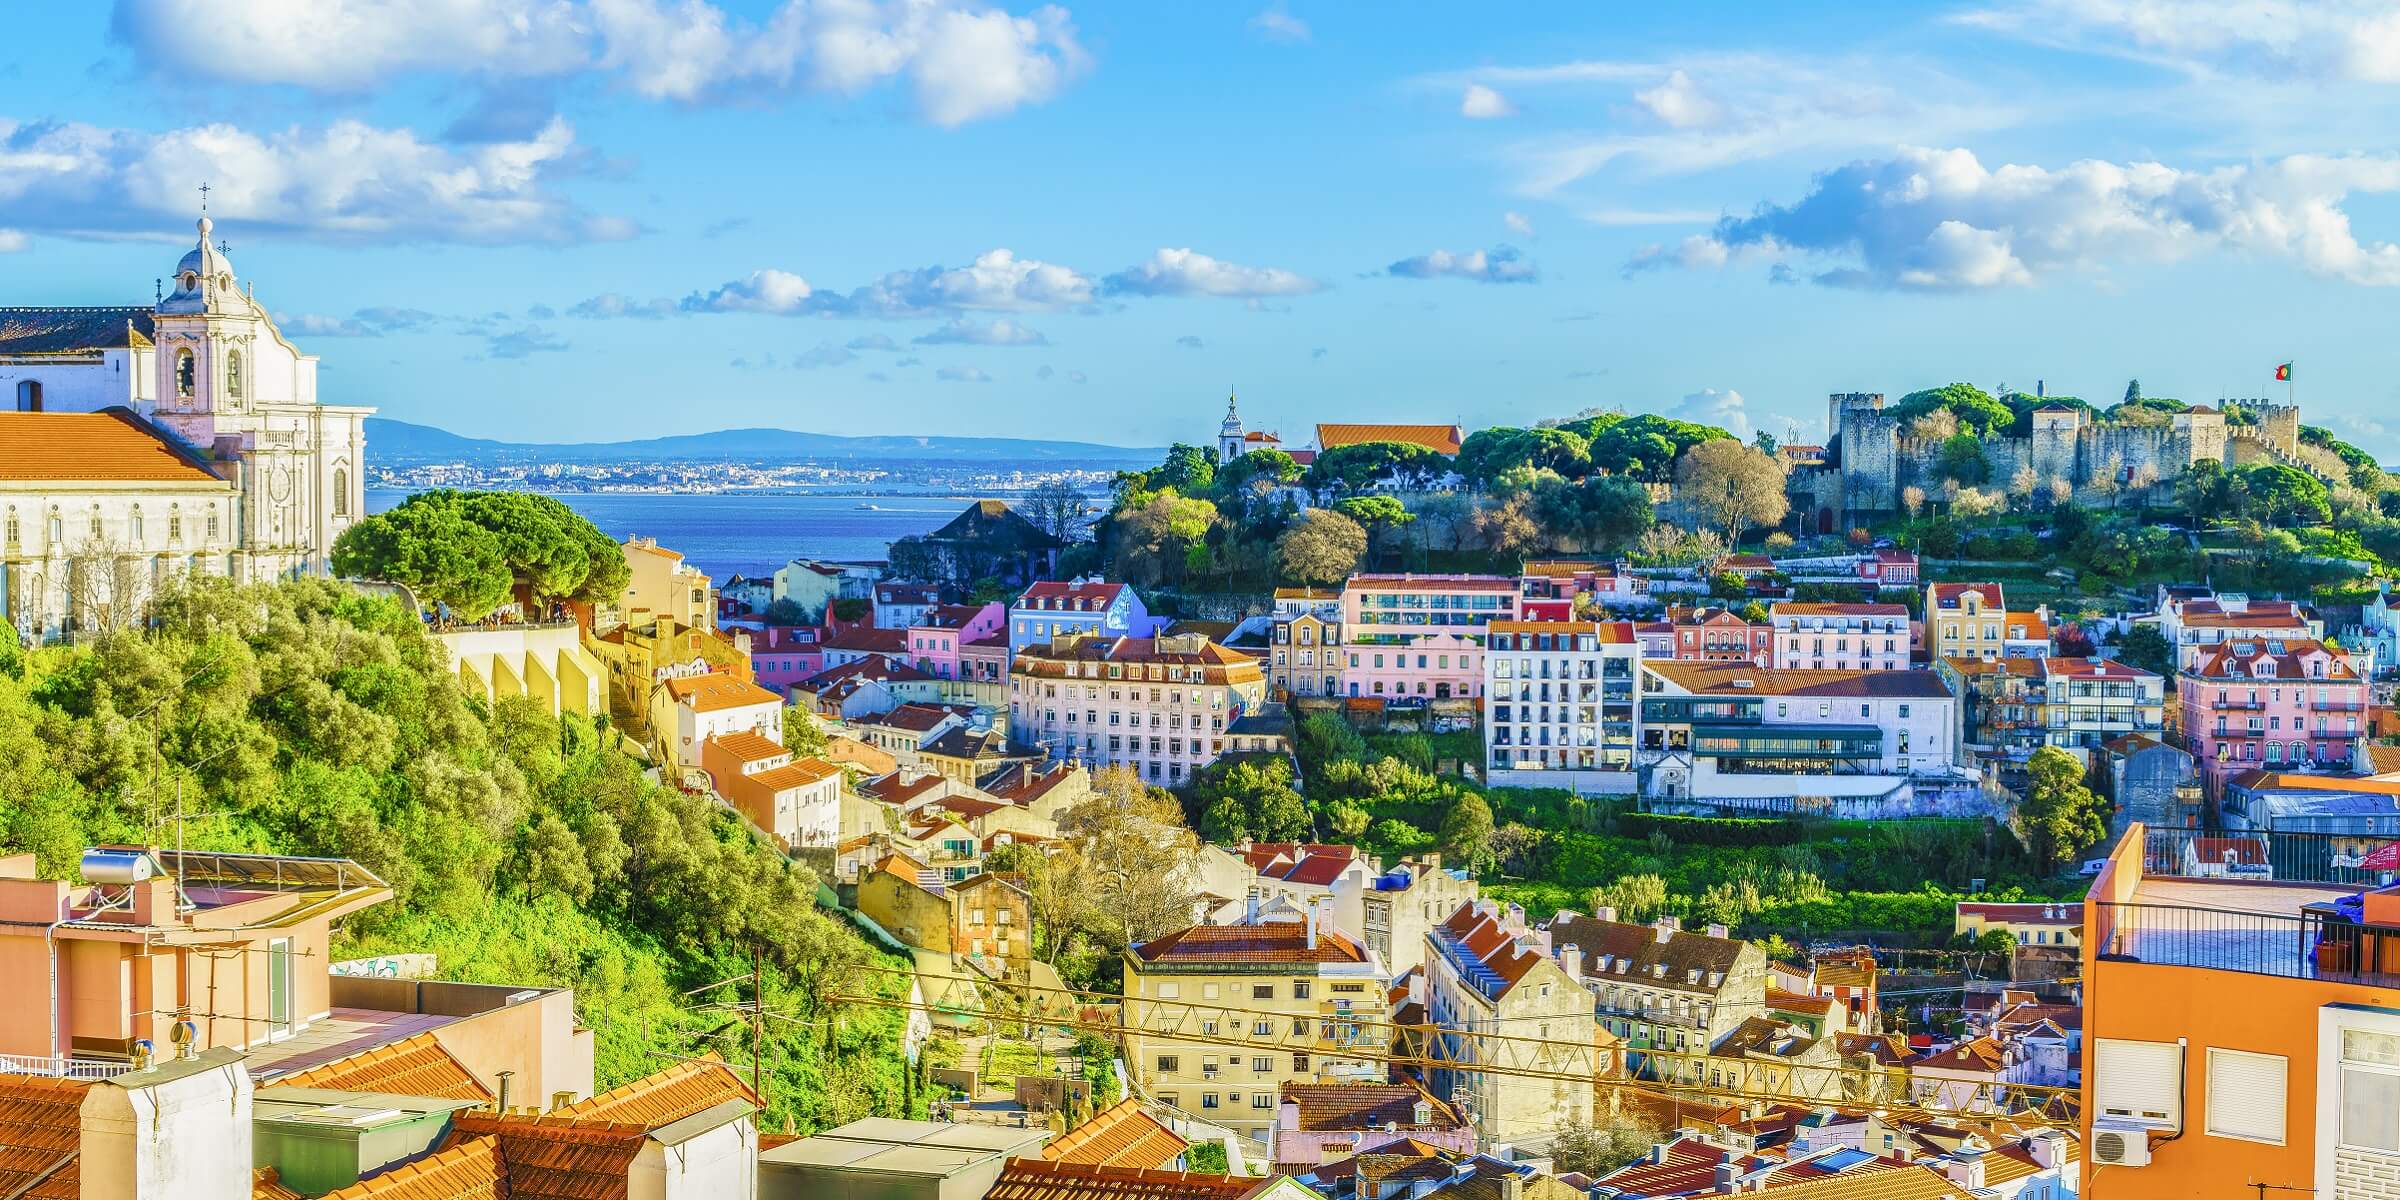 Lissabon, die Schöne am Tejo, umgibt der unwiderstehliche Charme vergangener Zeiten.